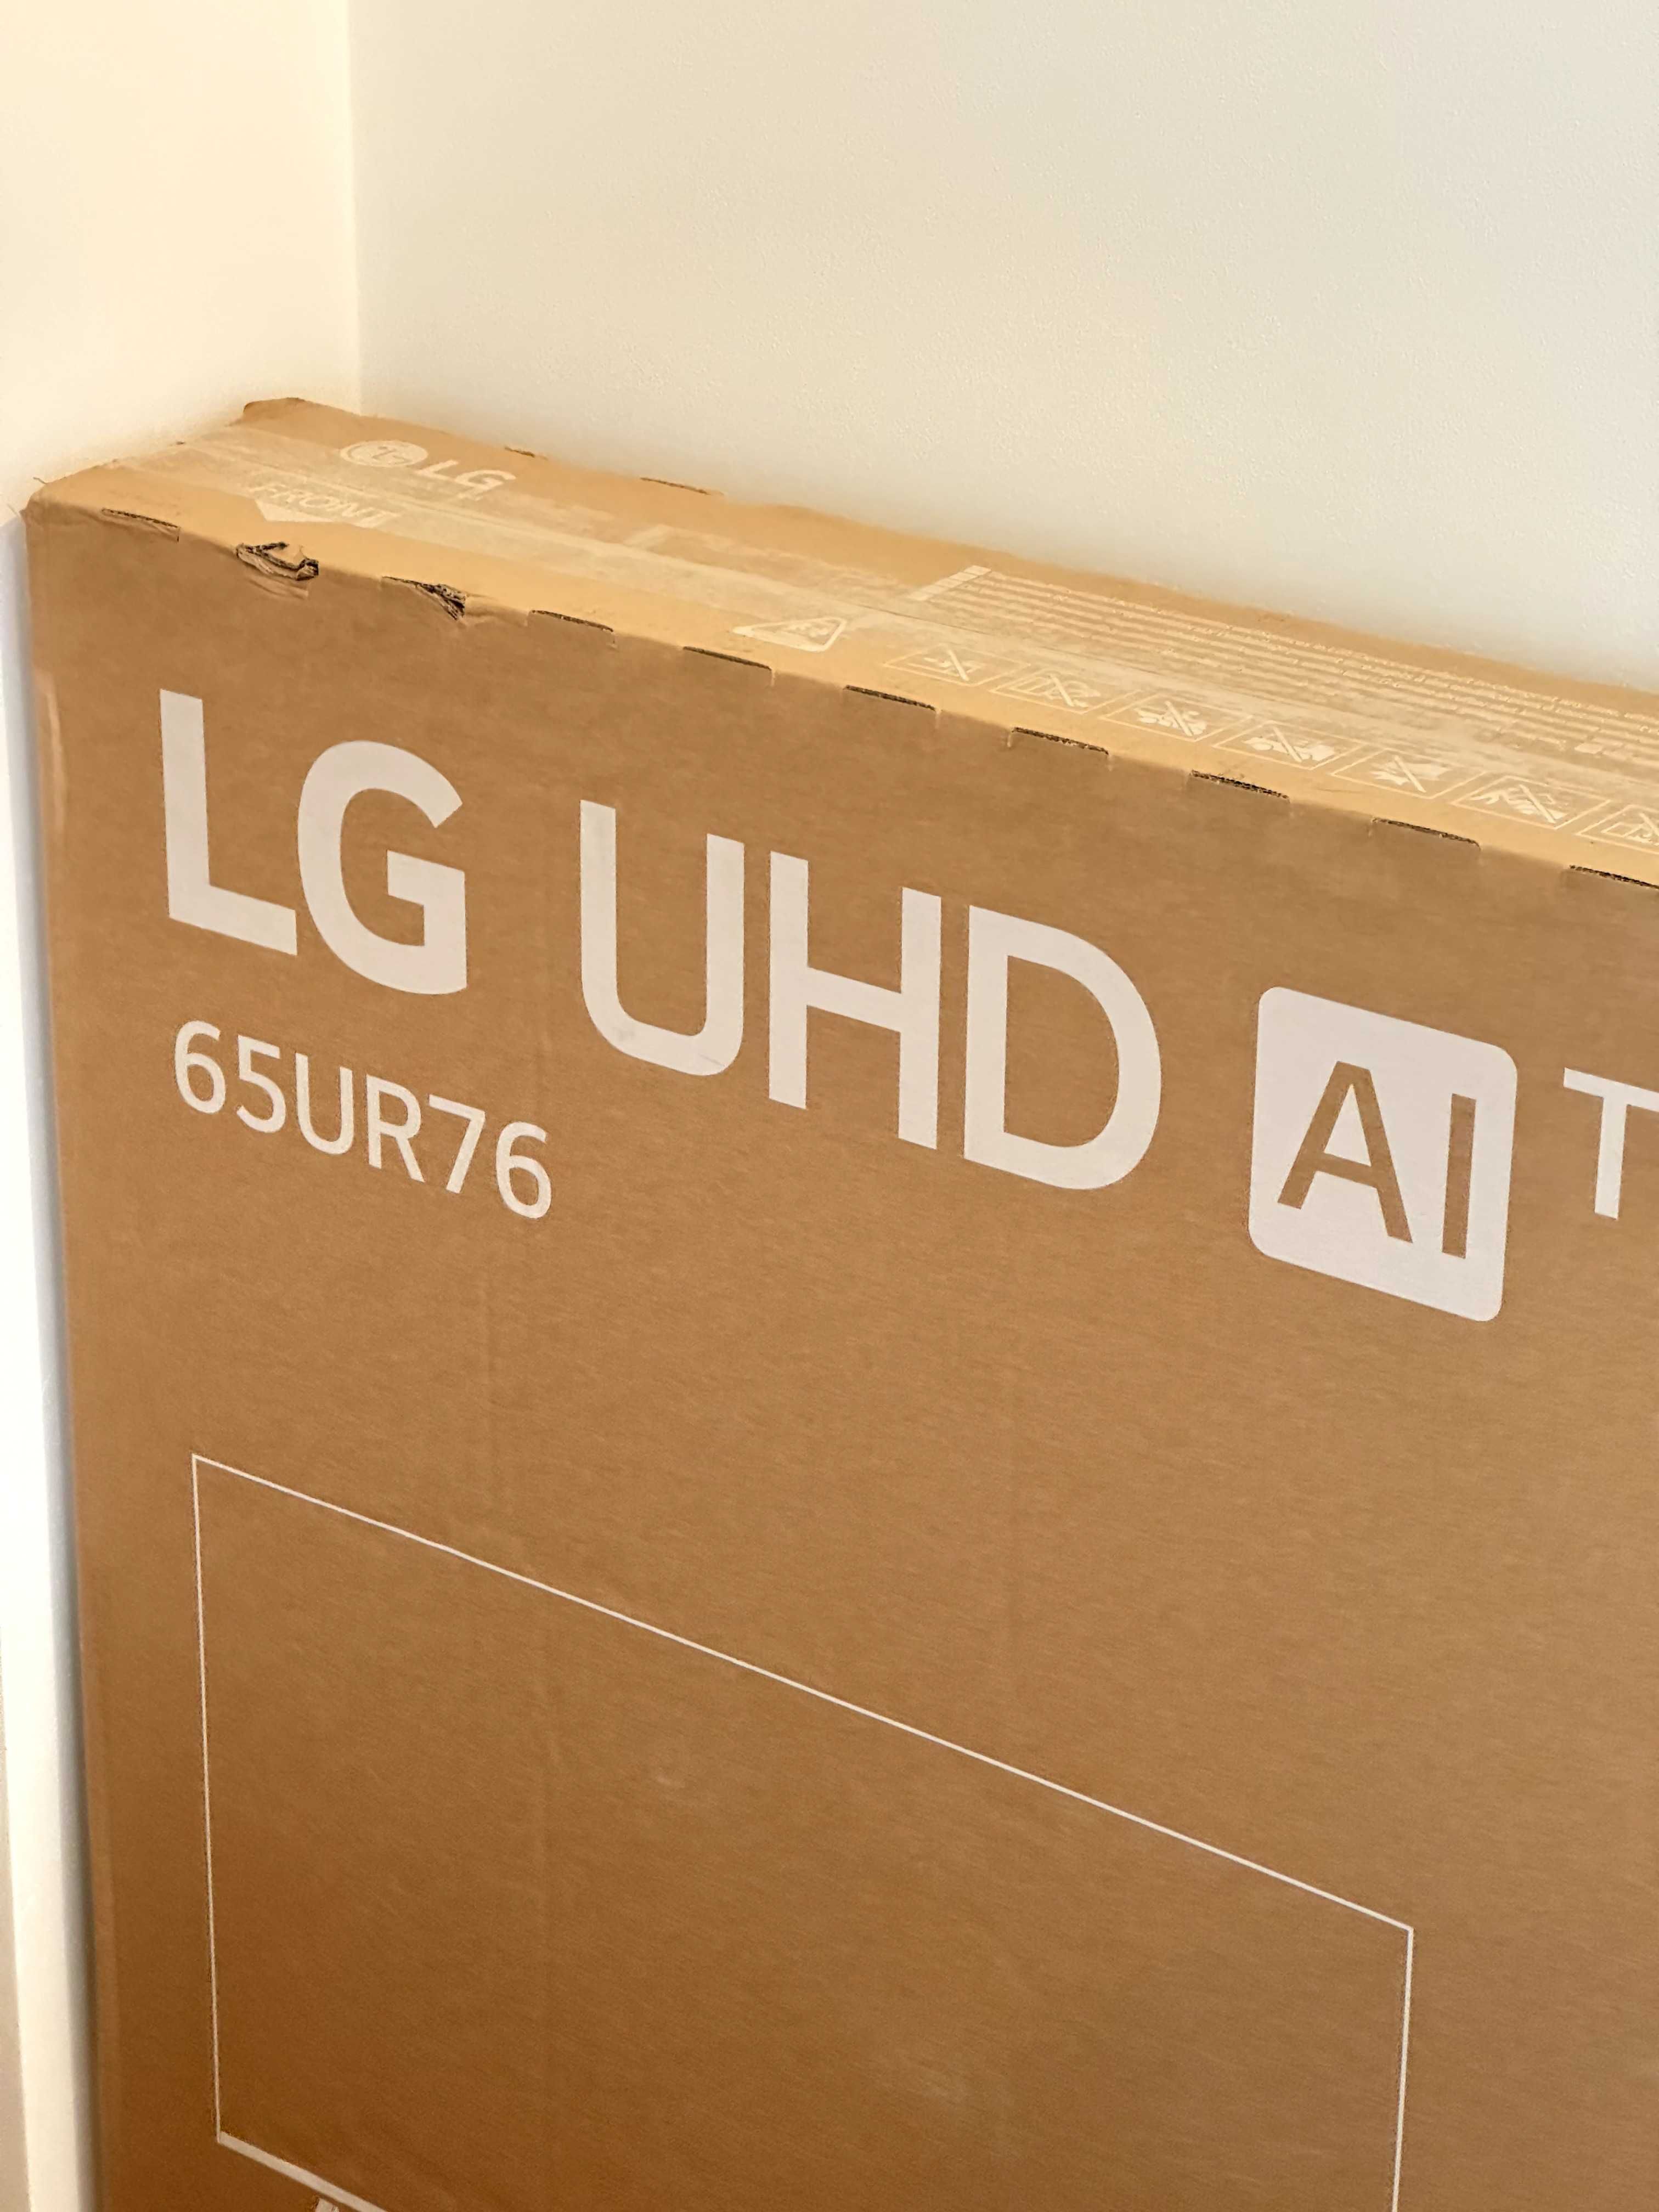 Smart TV LG 65UR76006LL LED 65" Ultra HD 4K